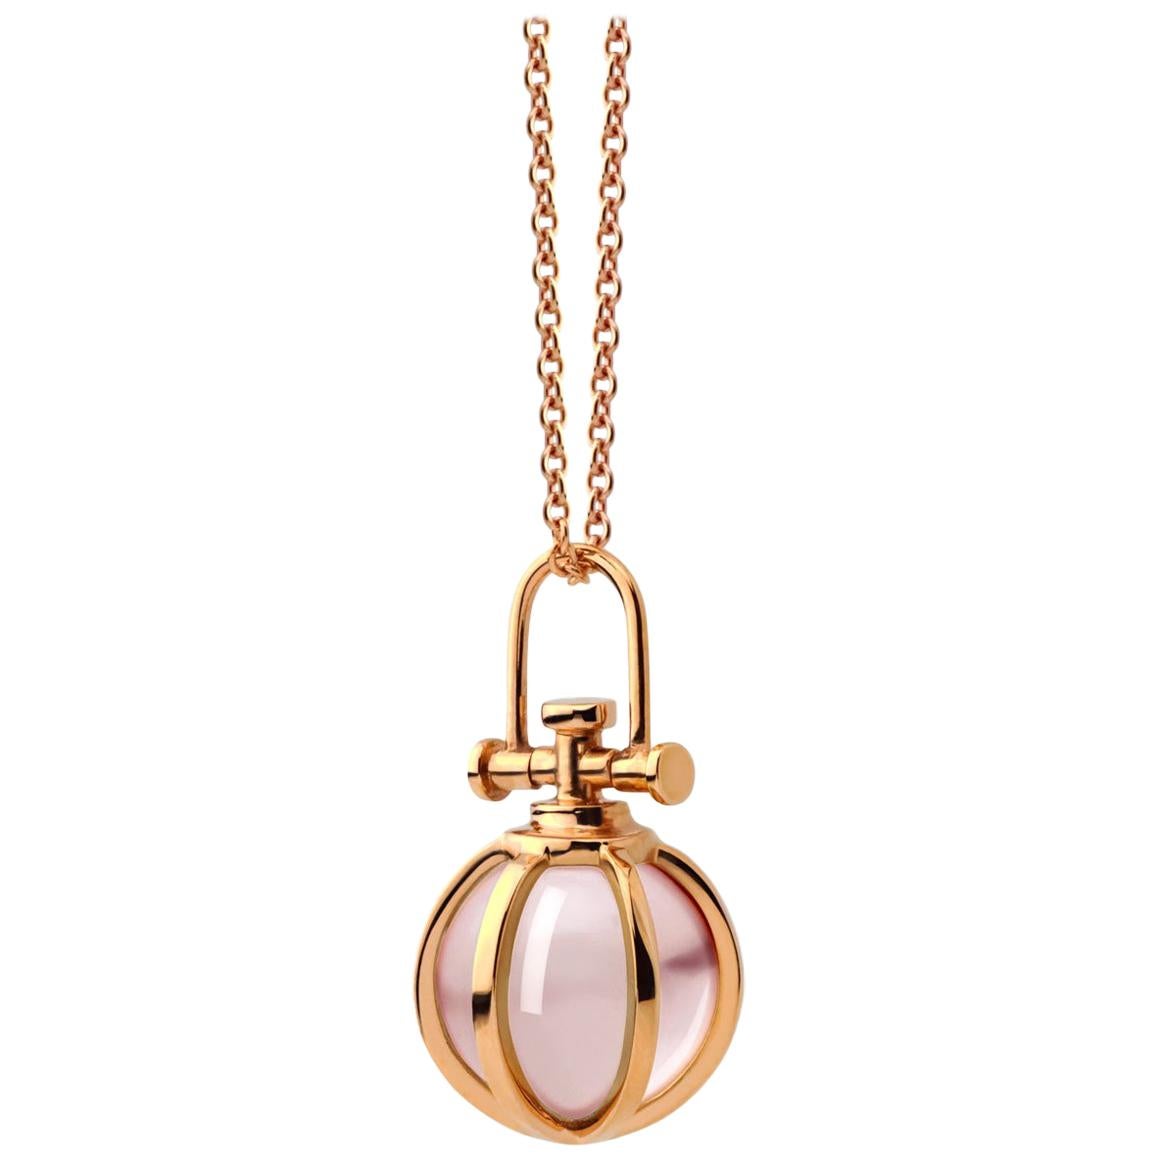 Modern Sacred 18 Karat Gold Crystal Orb Amulet Necklace with Natural Rose Quartz